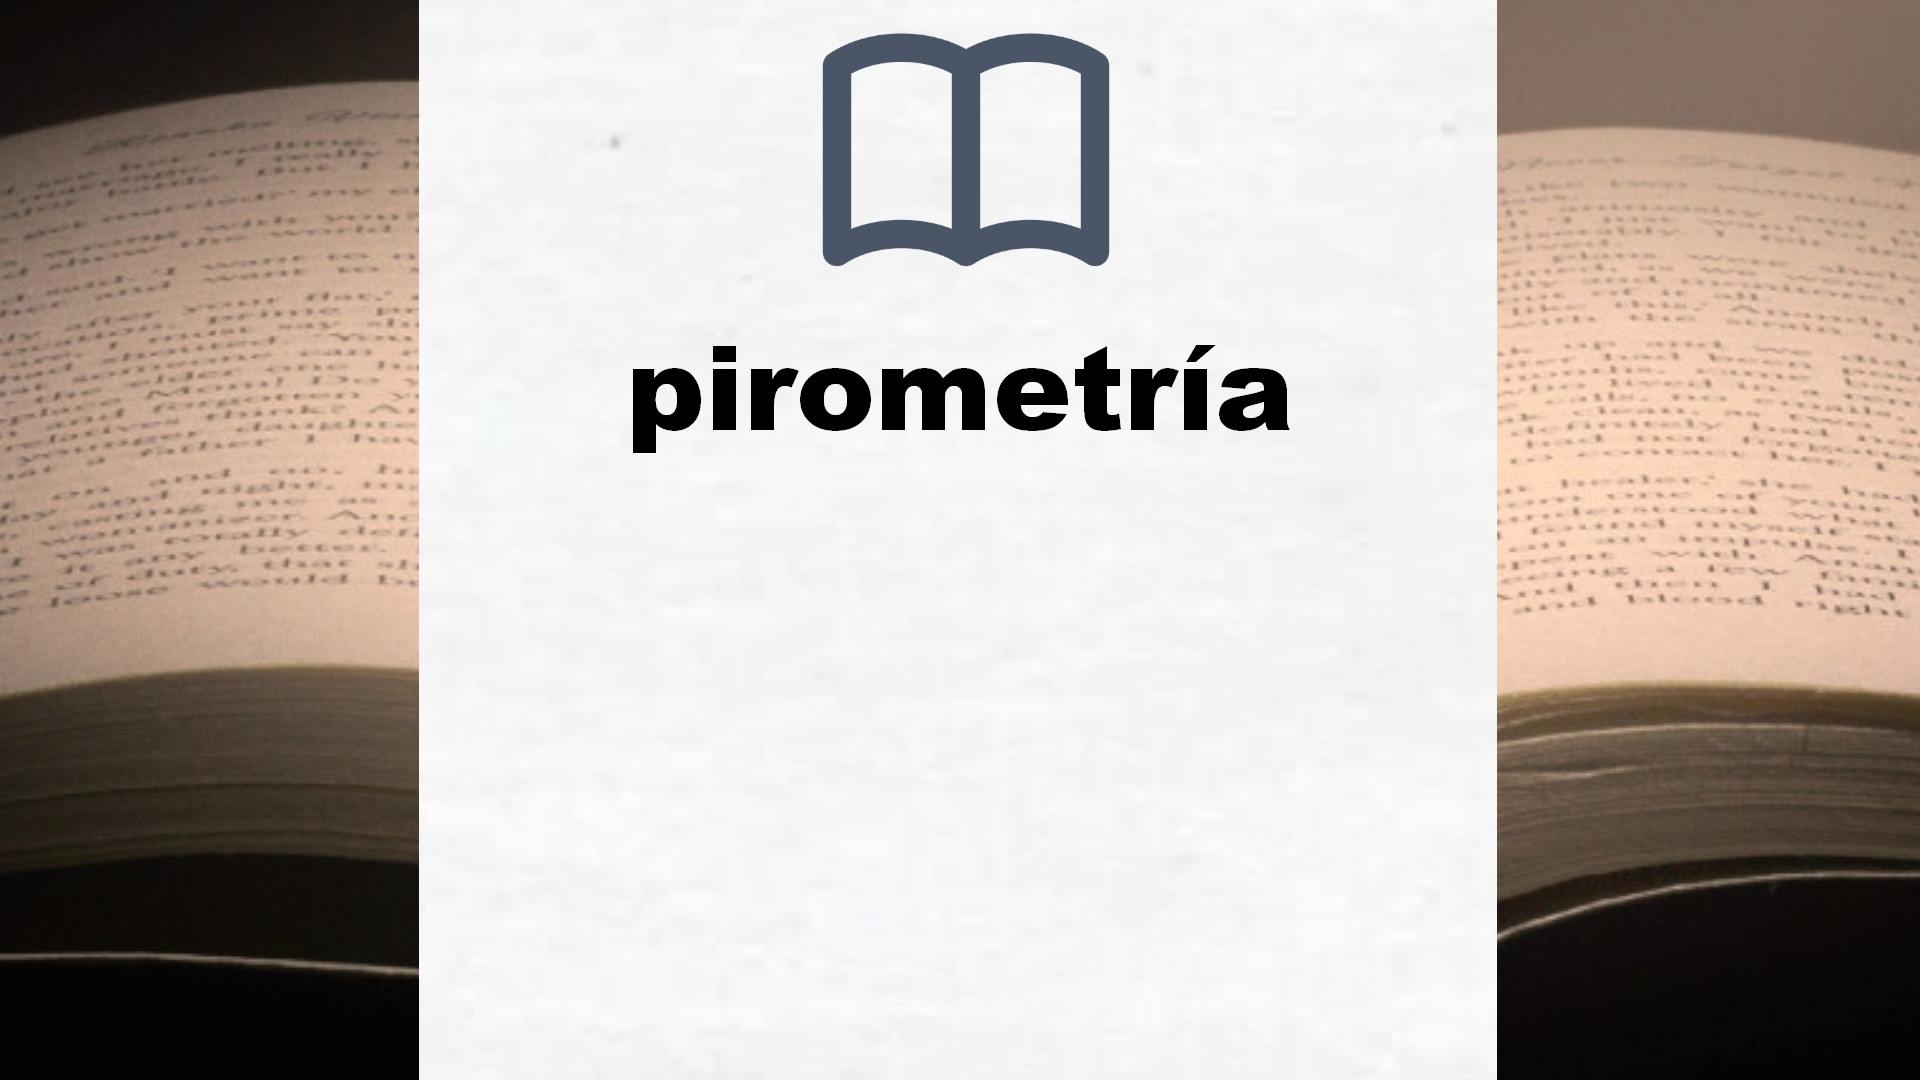 Libros sobre pirometría